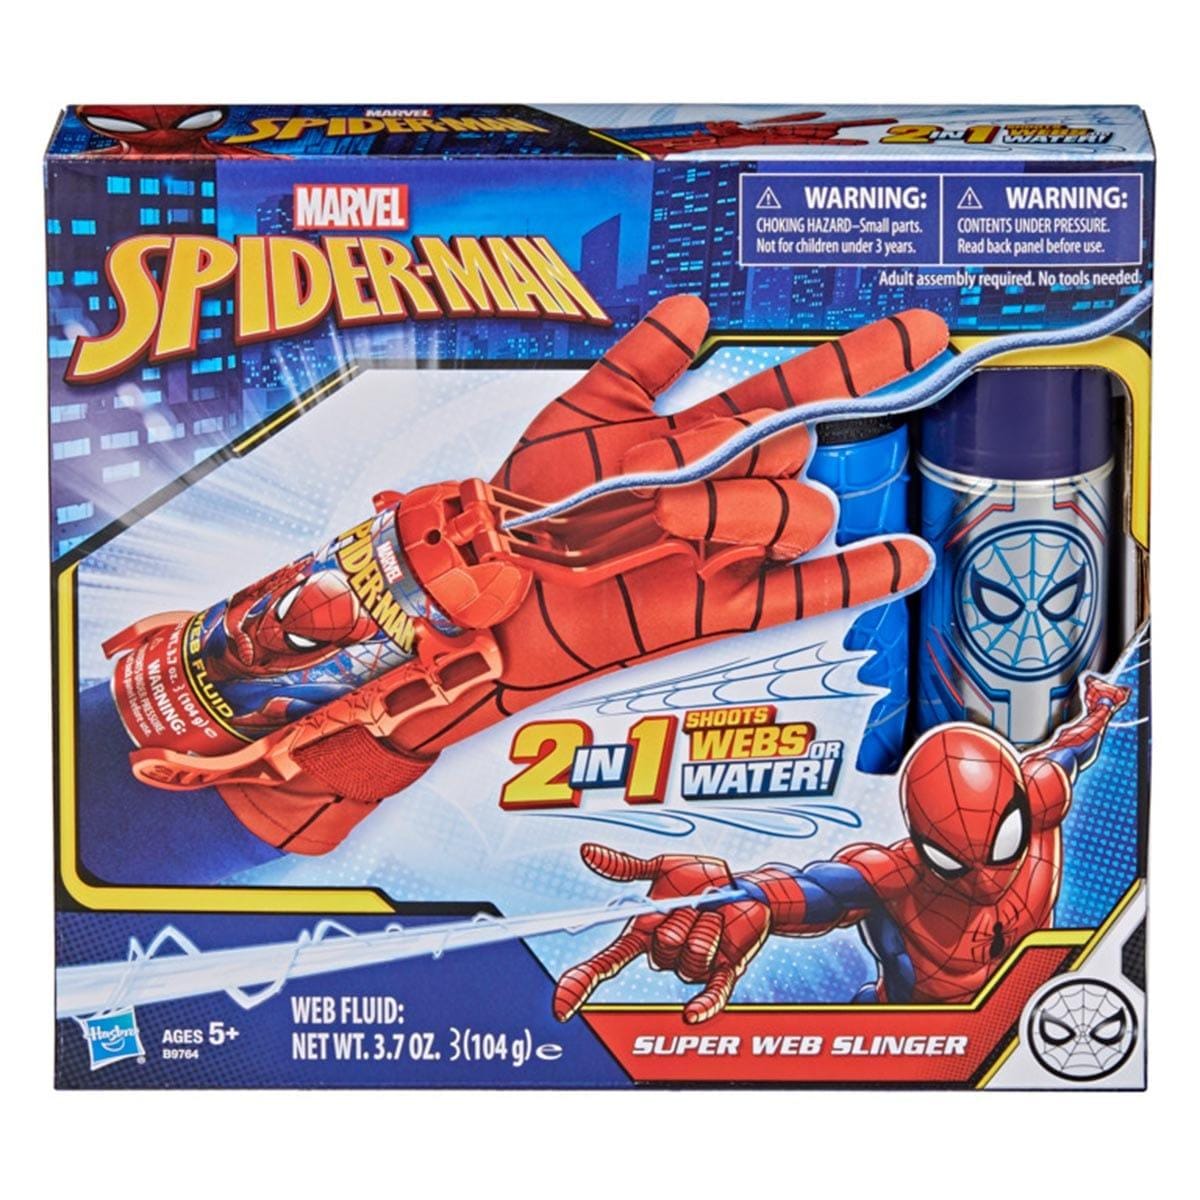 1 Set Gants de Lanceur Spiderman, Gant de Cosplay en Plastique pour